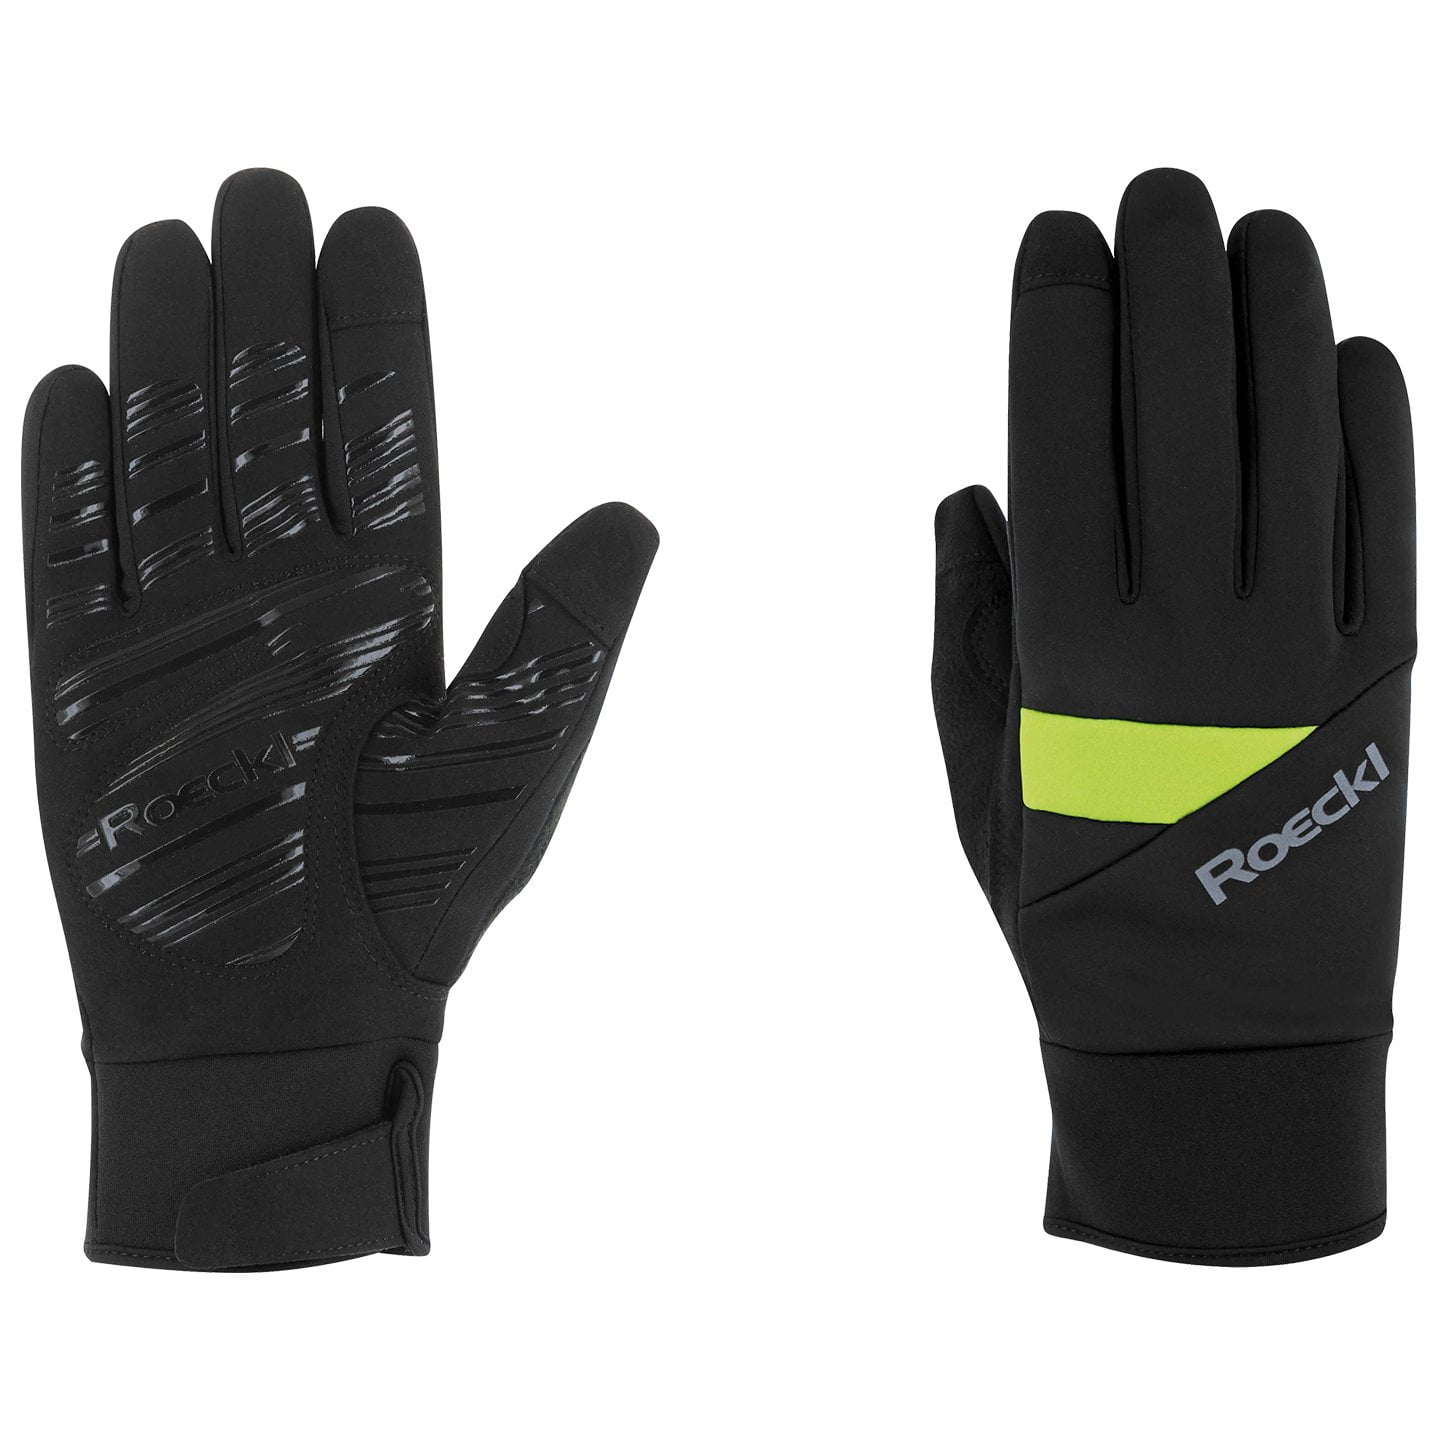 ROECKL Reichenthal jr. Kids Winter Gloves Winter Cycling Gloves, for men, size 7, Cycling gloves, Cycling clothes